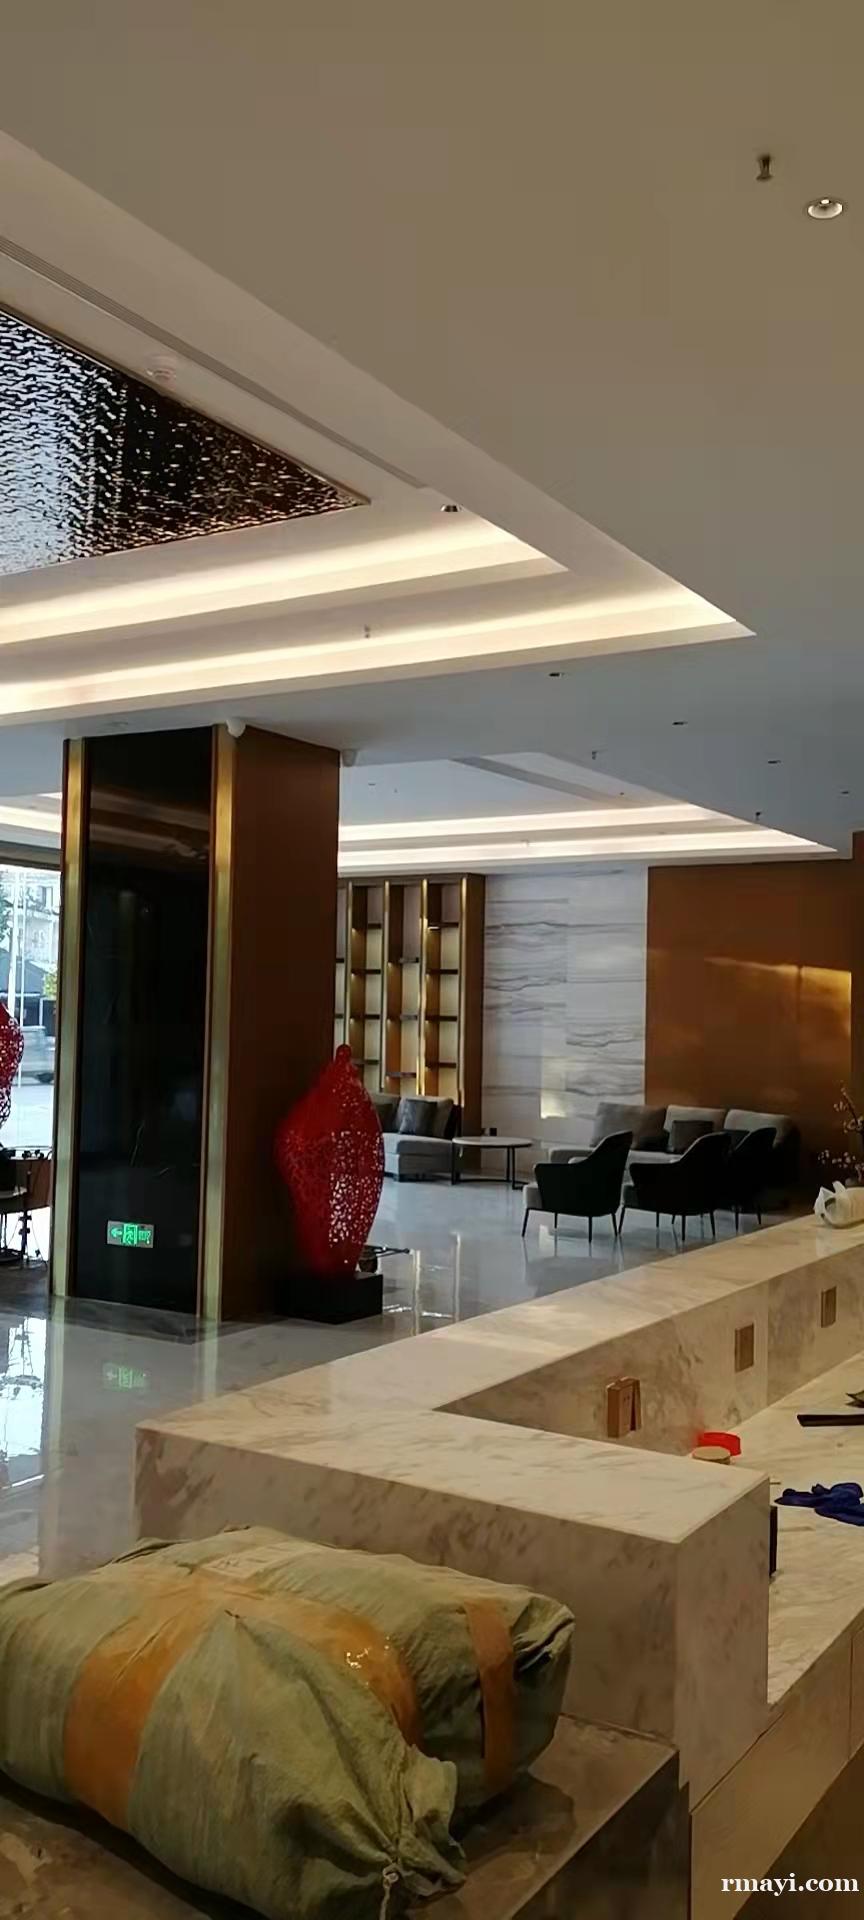 澜沧怡景酒店电梯监控安装